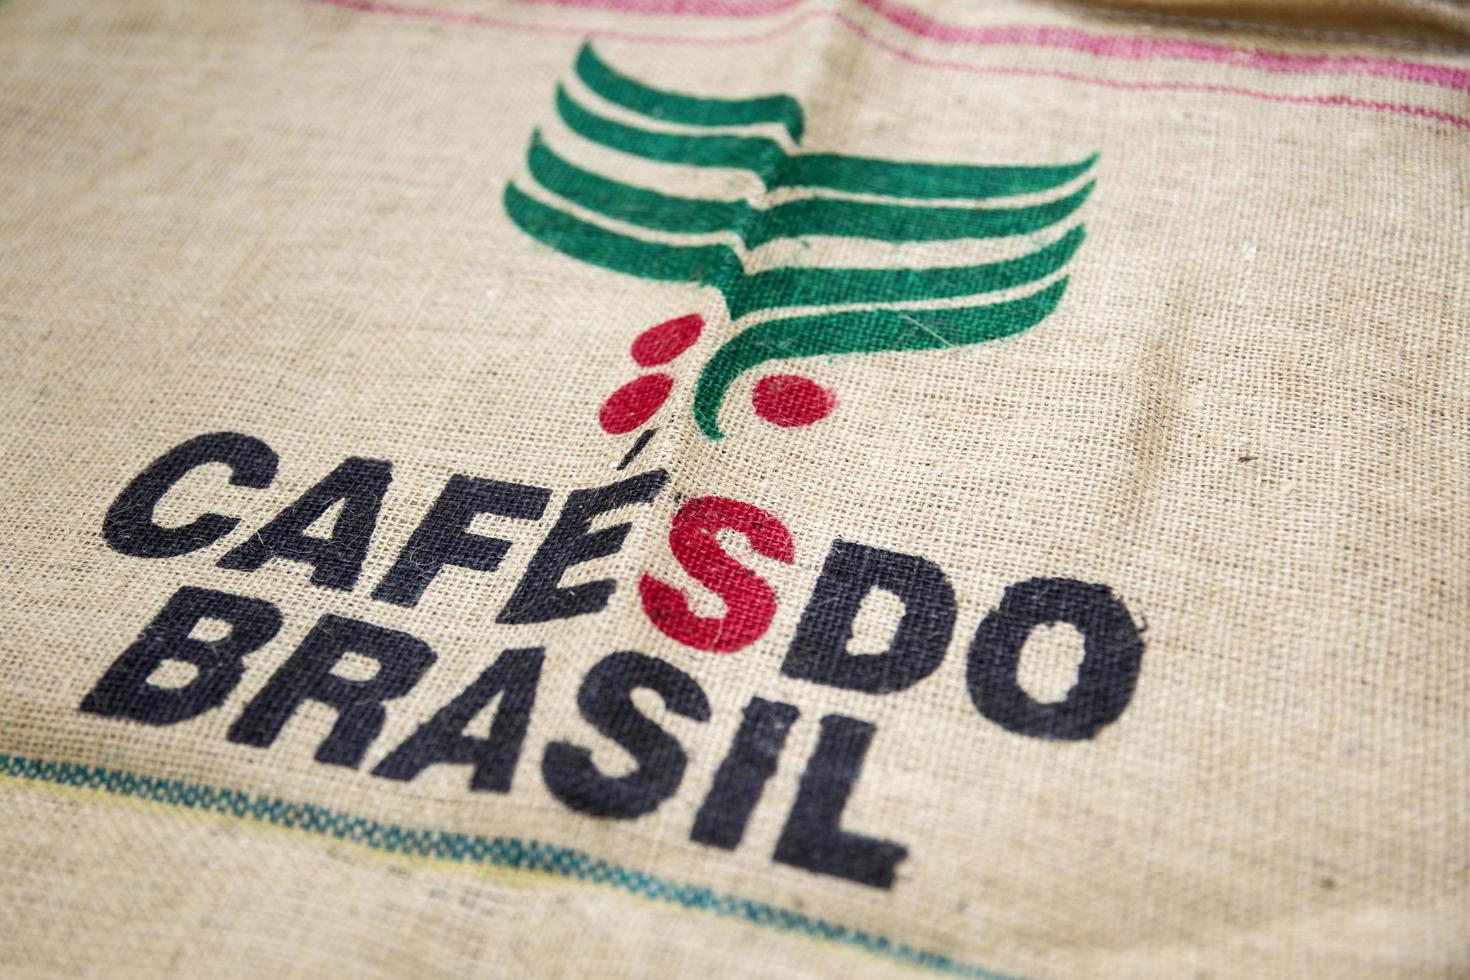 belgrado, serbia, 2017 - dettaglio della borsa cafe do brasil a belgrado, serbia. il Brasile è stato il più grande produttore mondiale di caffè negli ultimi 150 anni. foto